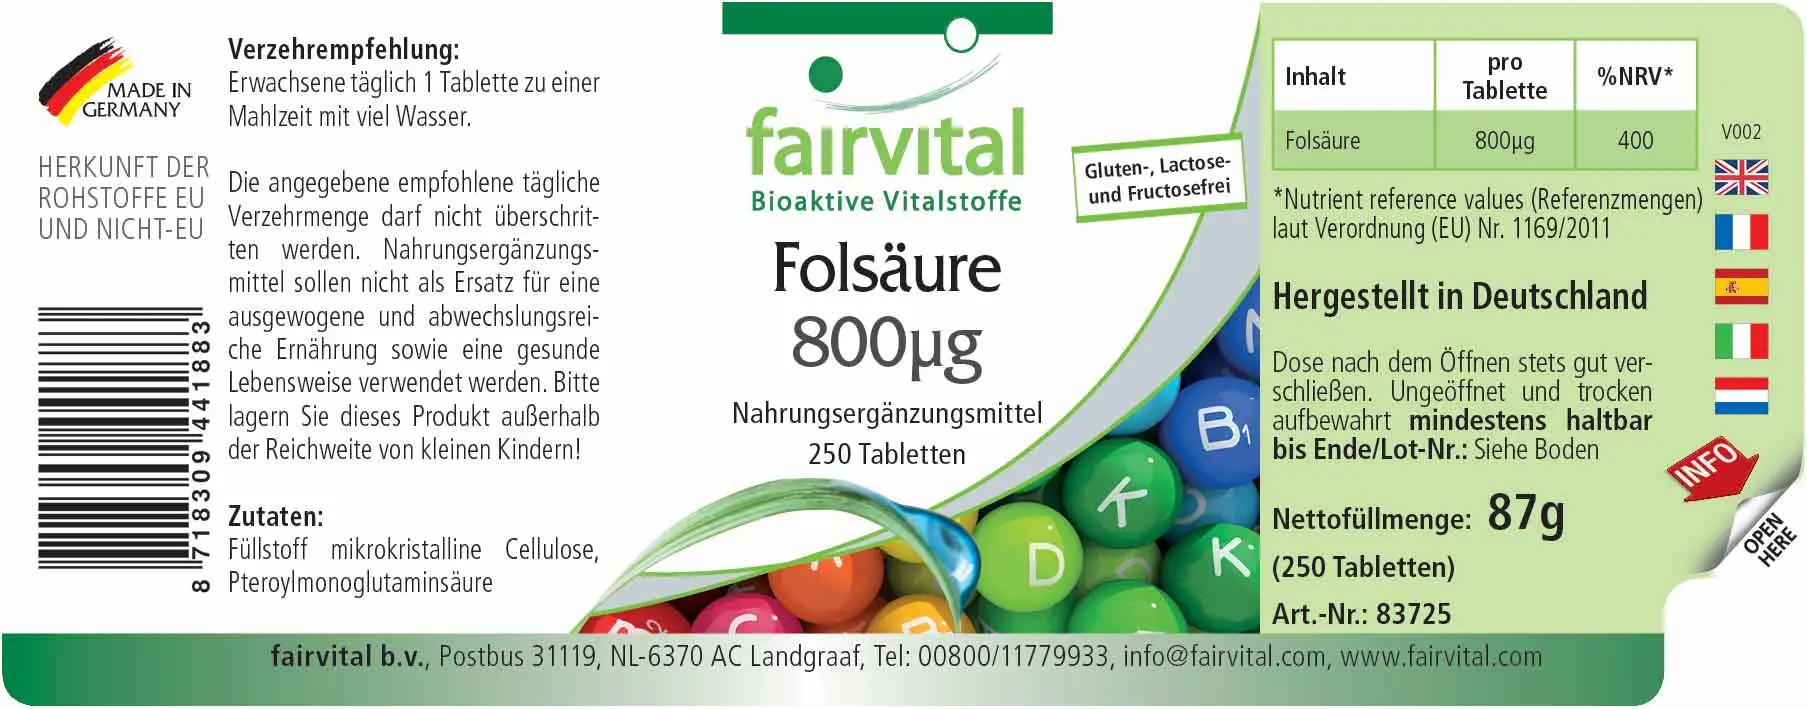 Acide folique 800µg - 250 comprimés